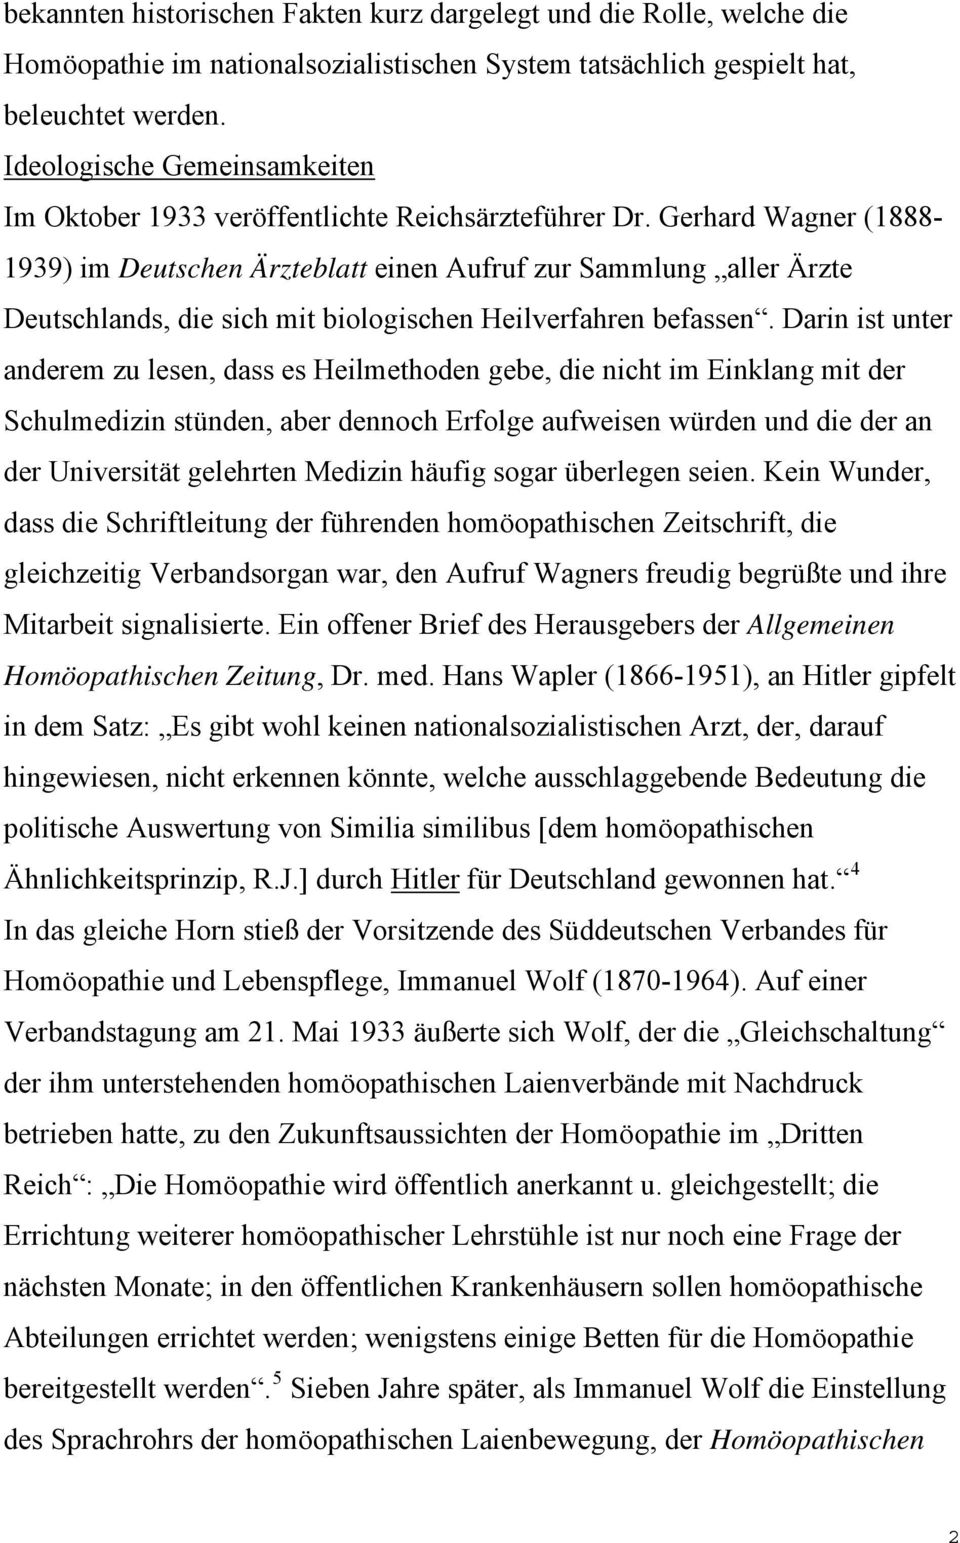 Gerhard Wagner (1888-1939) im Deutschen Ärzteblatt einen Aufruf zur Sammlung aller Ärzte Deutschlands, die sich mit biologischen Heilverfahren befassen.